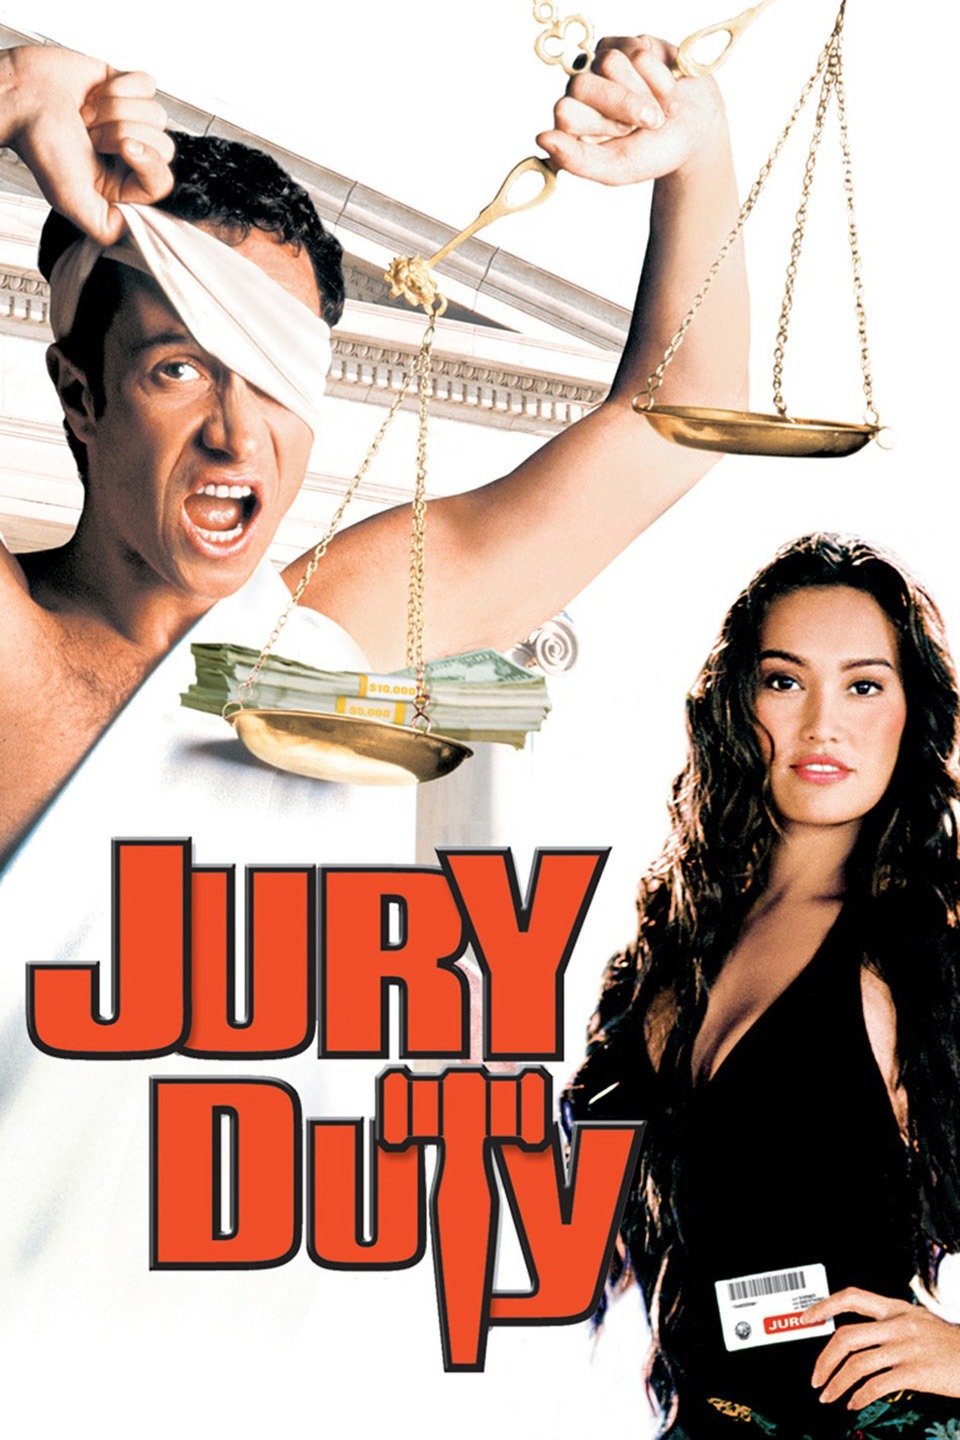 Jury Duty (film) Alchetron, The Free Social Encyclopedia